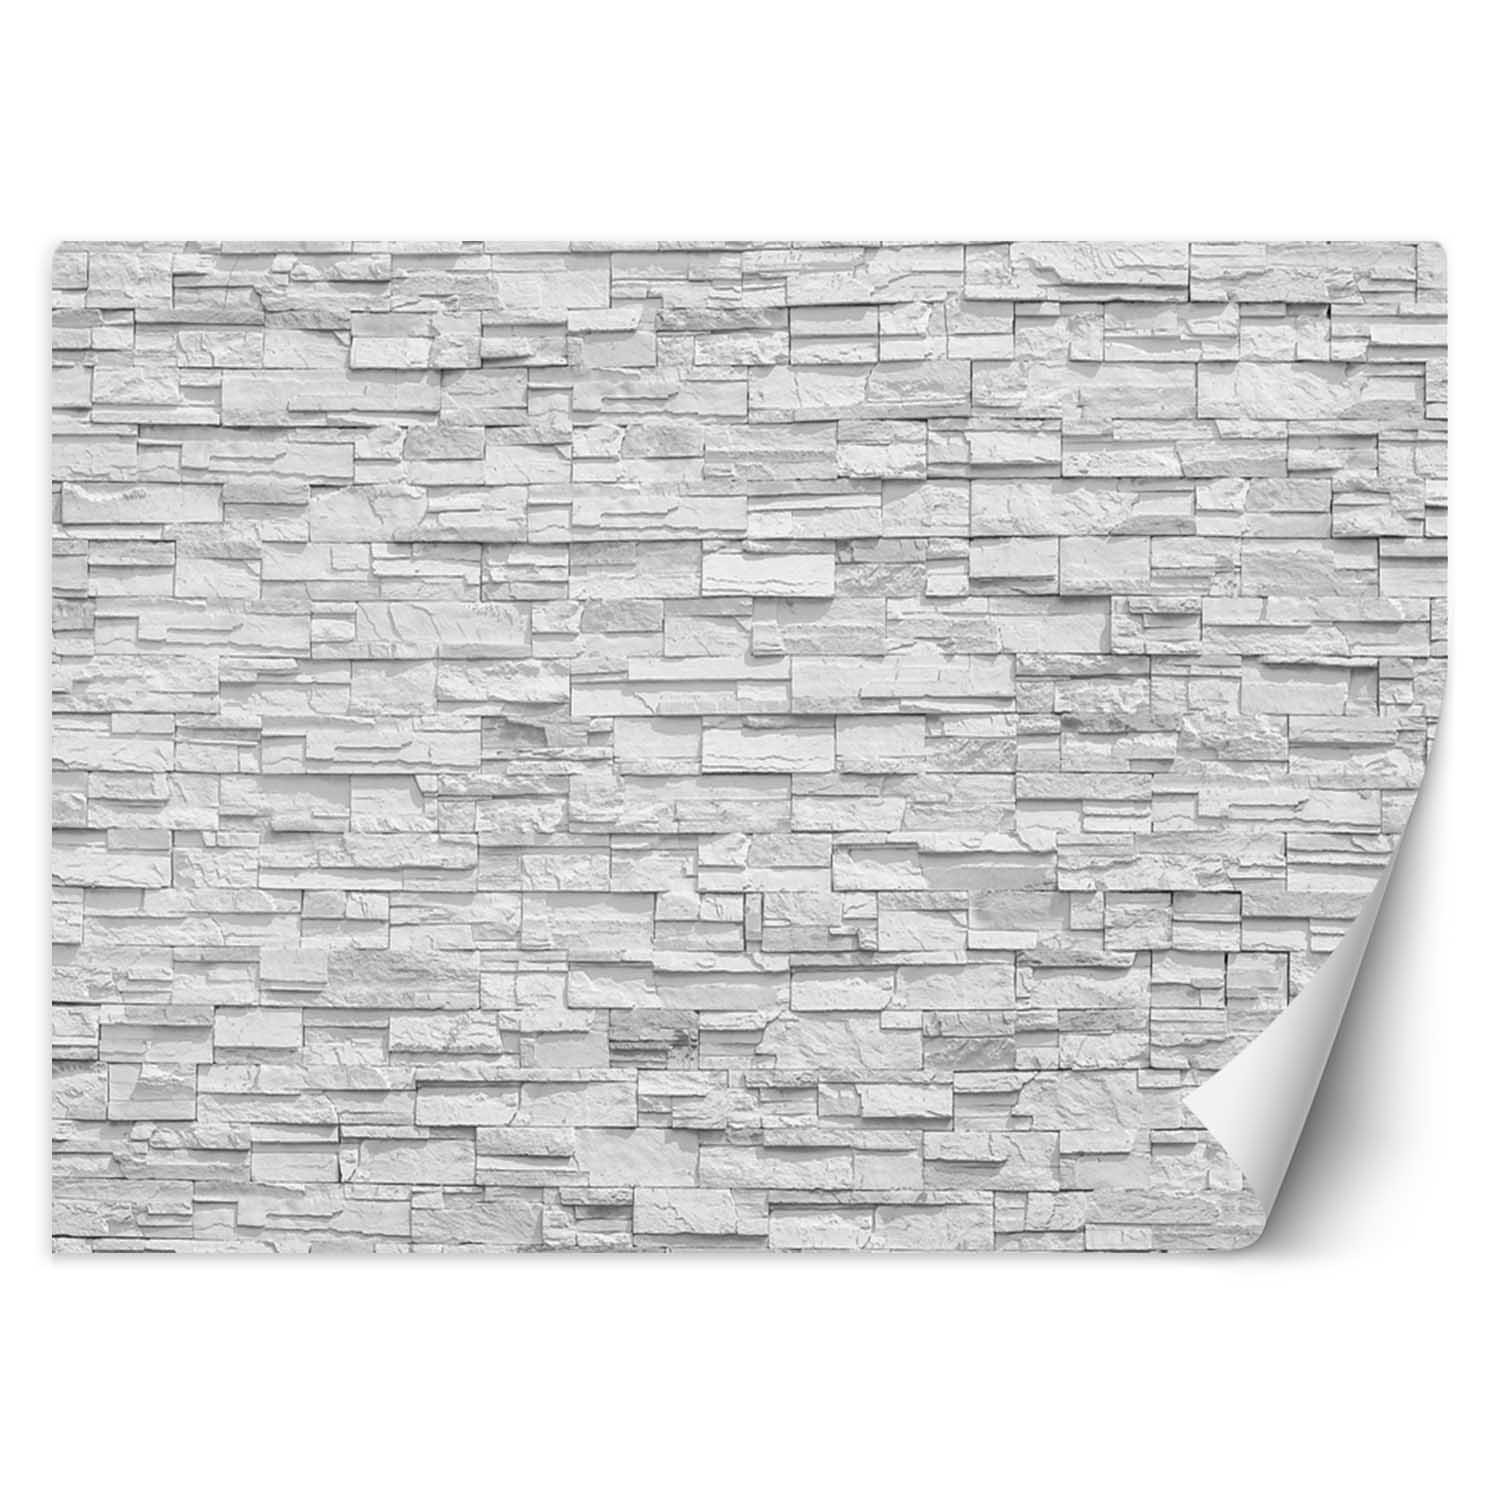 Trend24 – Behang – Witte Stenen Muur – Vliesbehang – Behang Woonkamer – Fotobehang – 400x280x2 cm – Incl. behanglijm